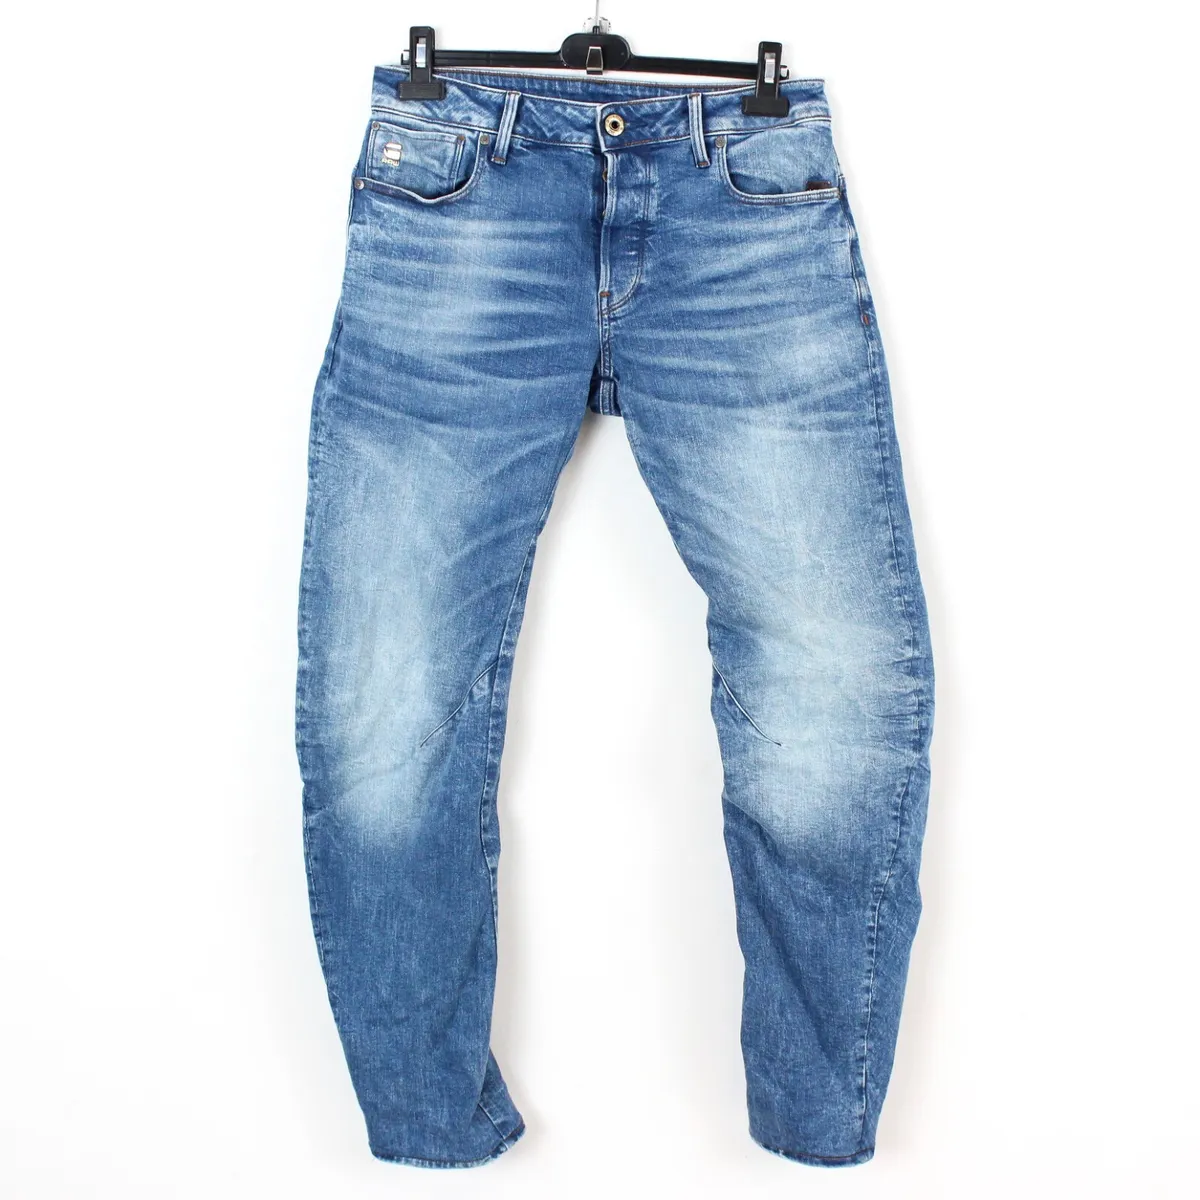 Trin Vejrtrækning resultat G STAR RAW ARC 3D Slim Fit Mens W30 L34 Tapered Leg Jeans Denim Pants  Trousers | eBay